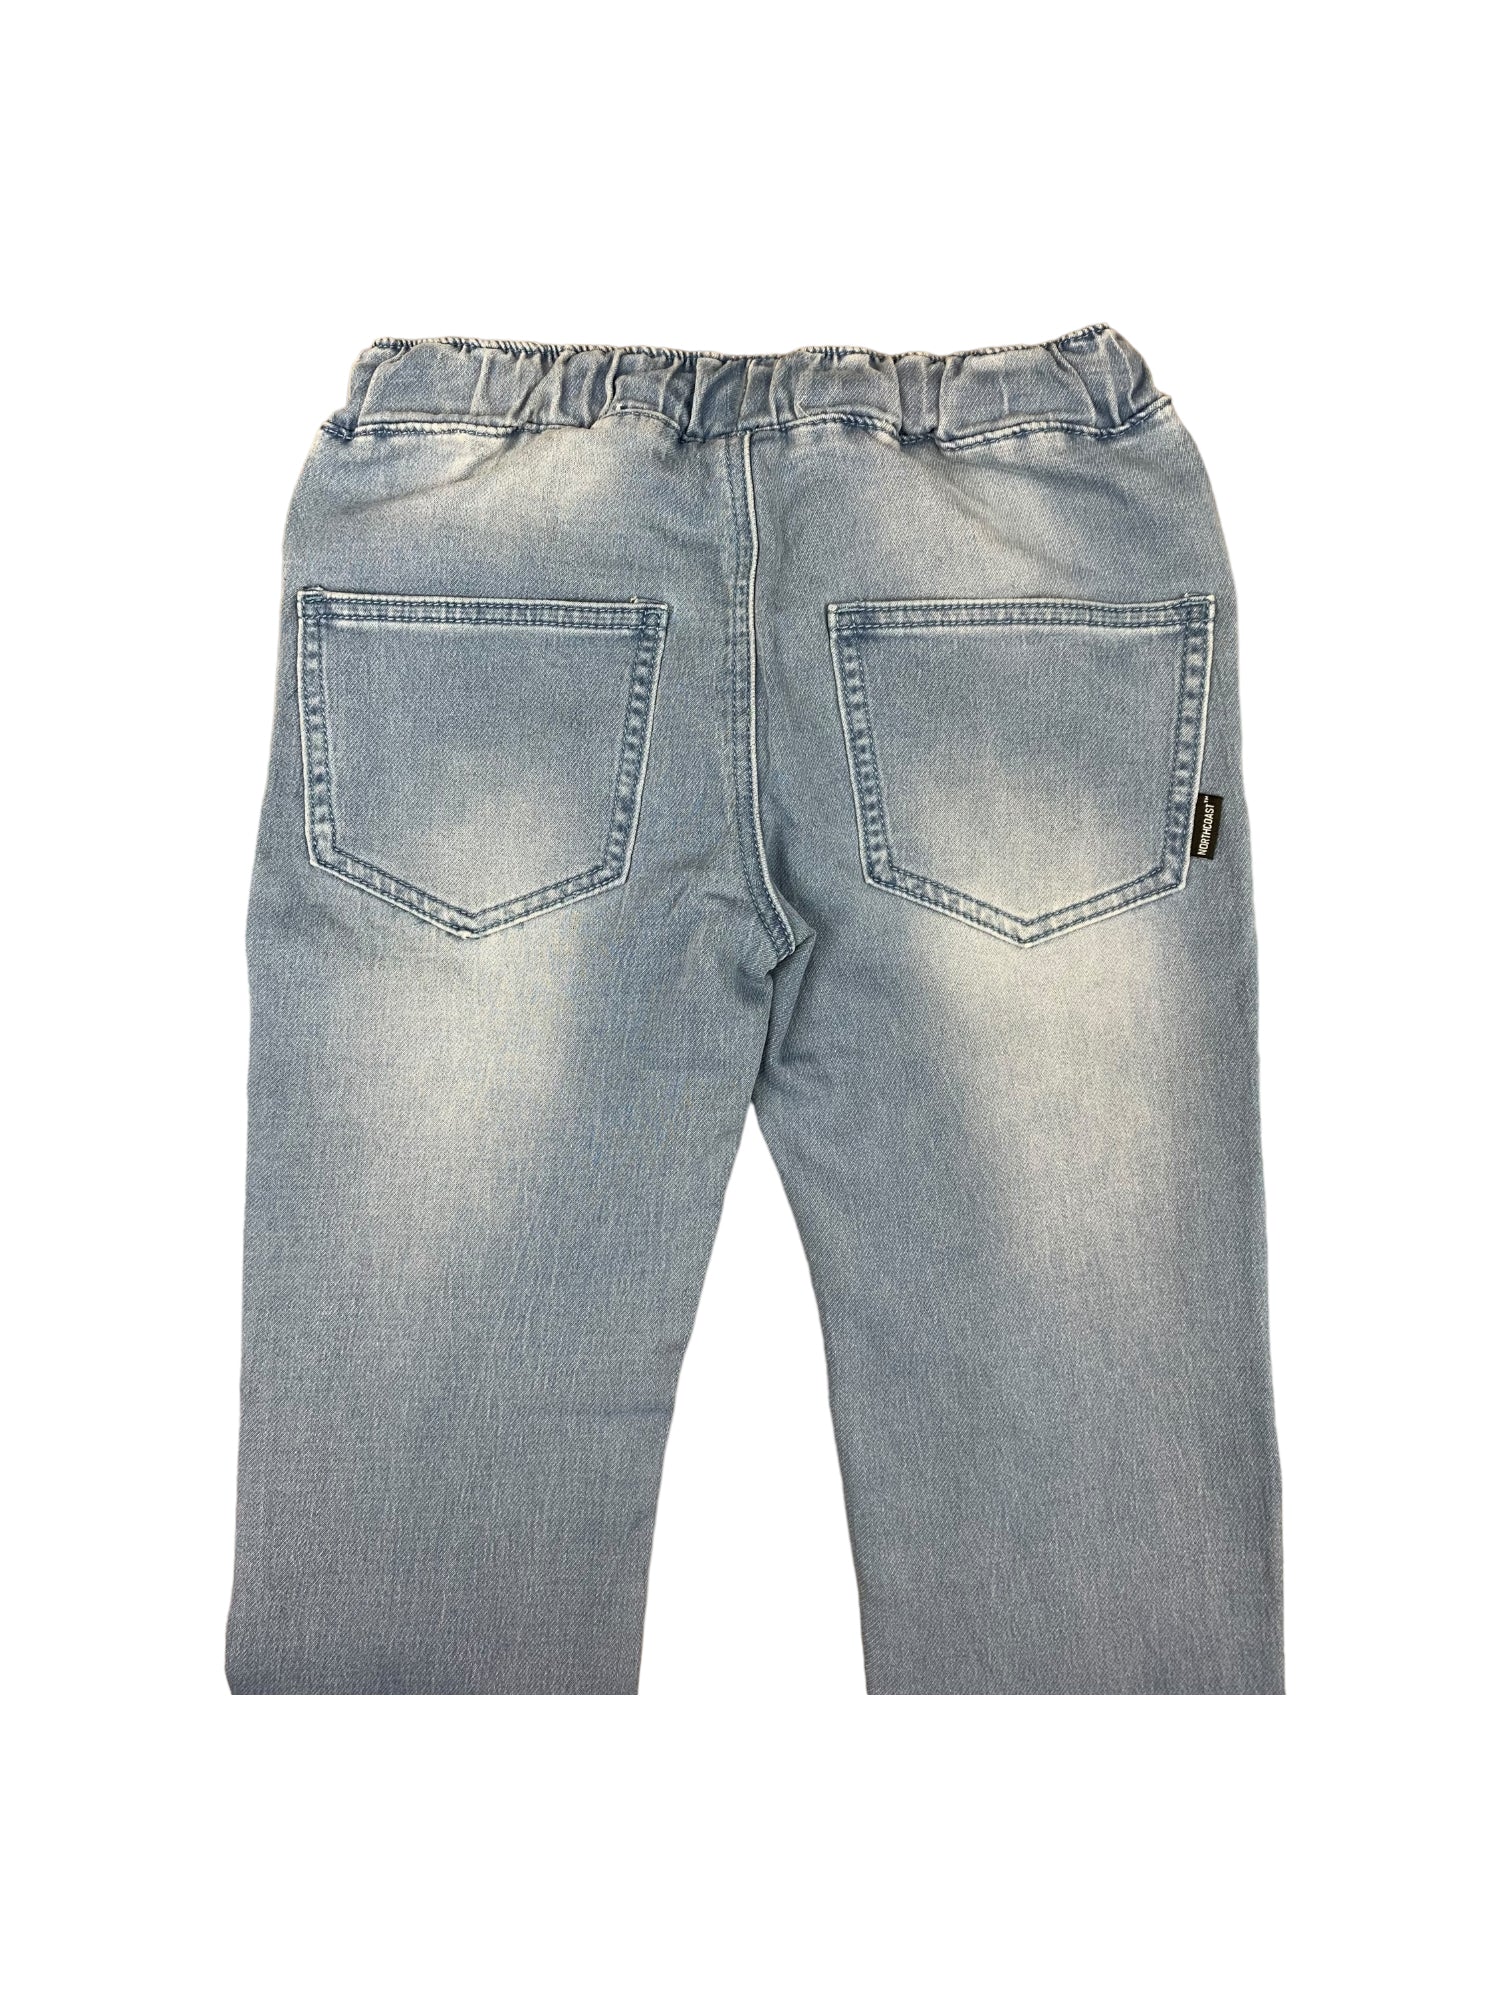 Jogger jeans bleu délavé pour garçon.  5 poches et cordon d'ajustement à la taille. Dos.